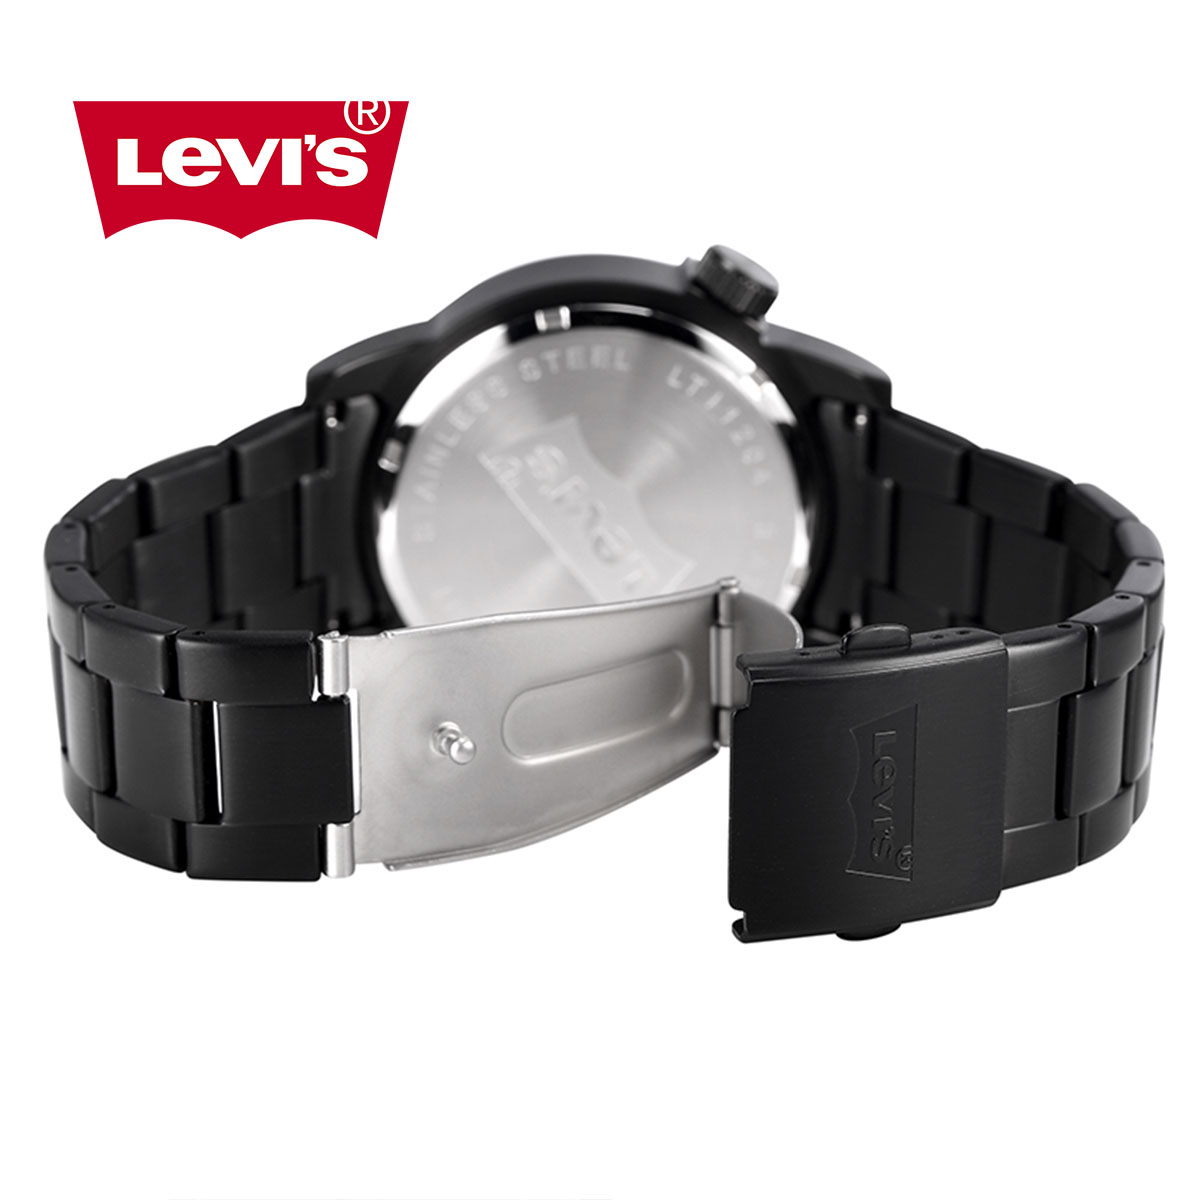 Đồng hồ nam Levis LTIA12 chính hãng, dây da